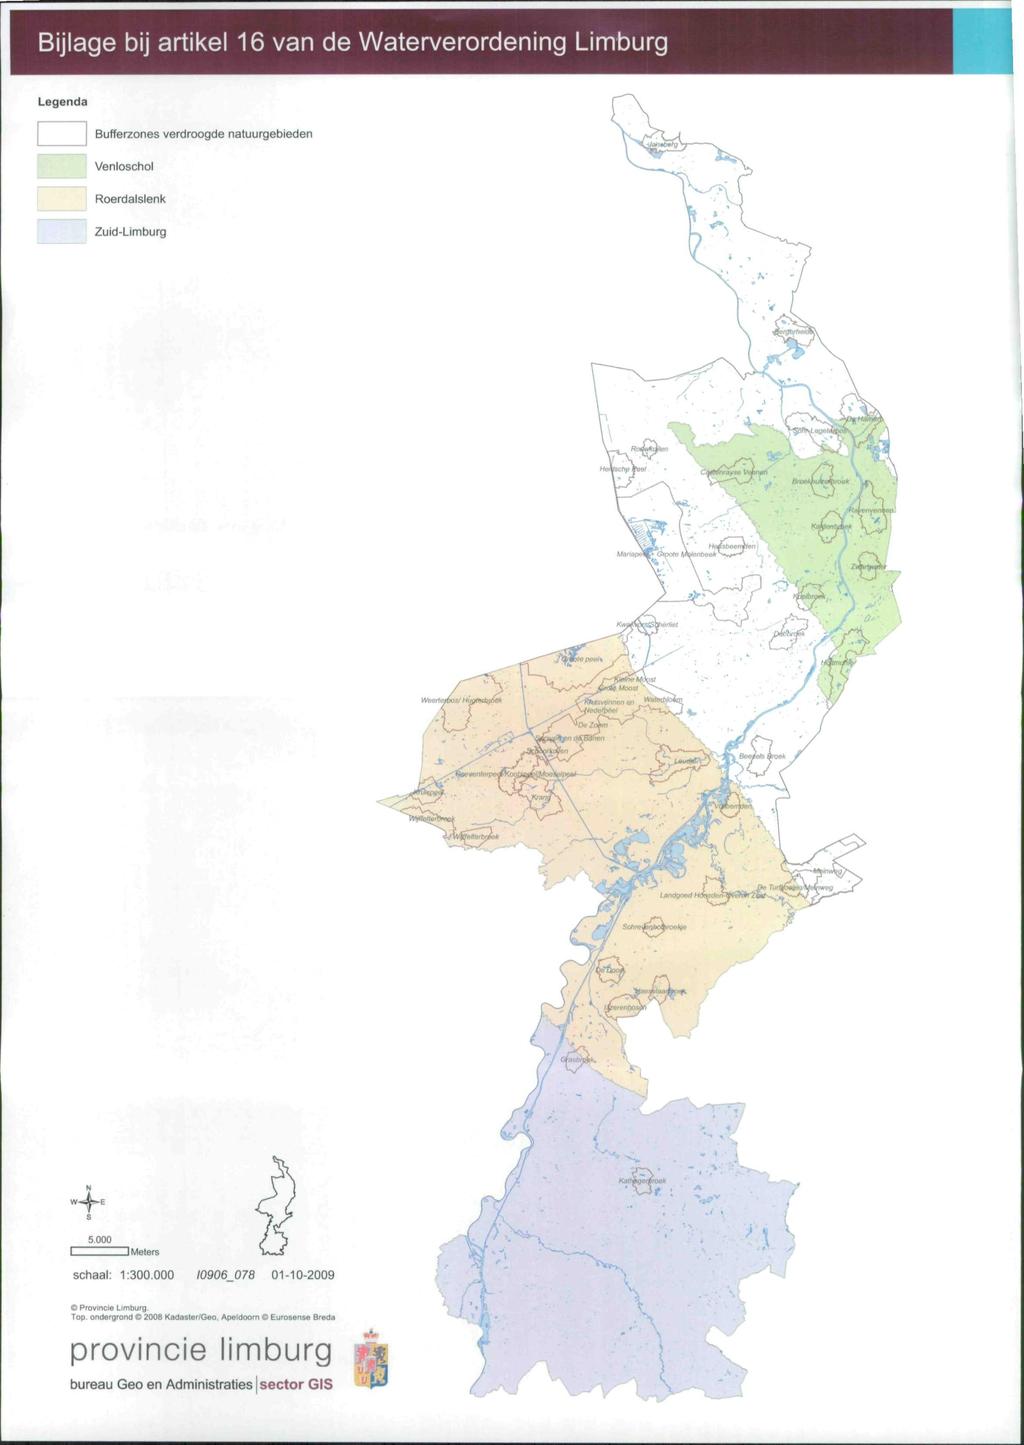 Bijlage bij artikel 16 van de Waterverordening Limburg Bufferzones verdroogde natuurgebieden Venloschol Roerdalslenk